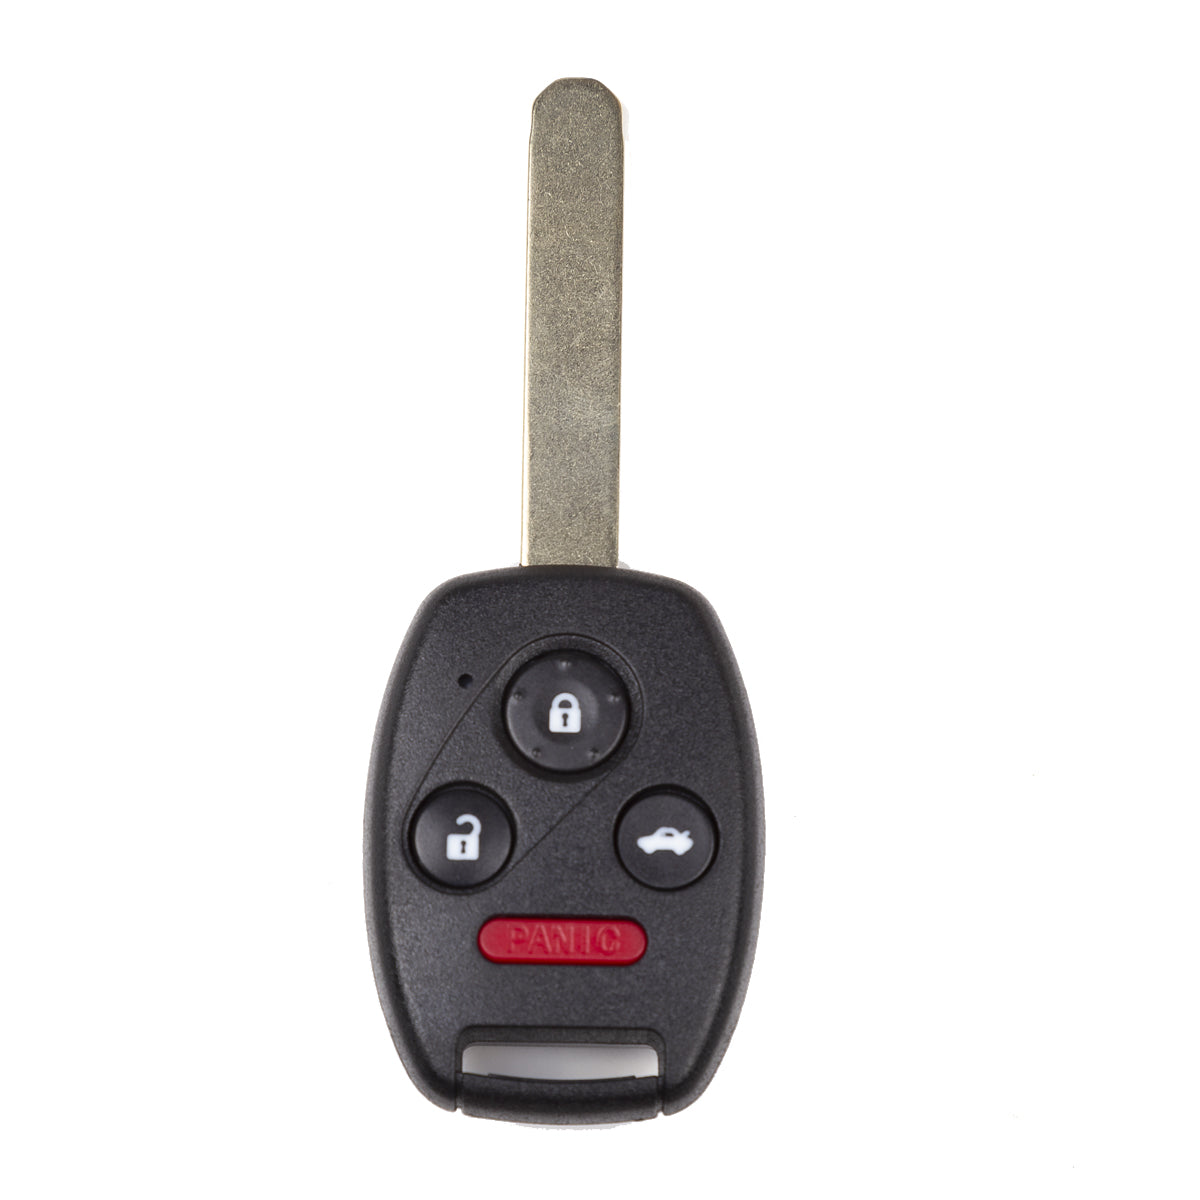 2006 - 2011 Honda Civic (4Drs) Key Fob 4 Buttons FCC# N5F-S0084A